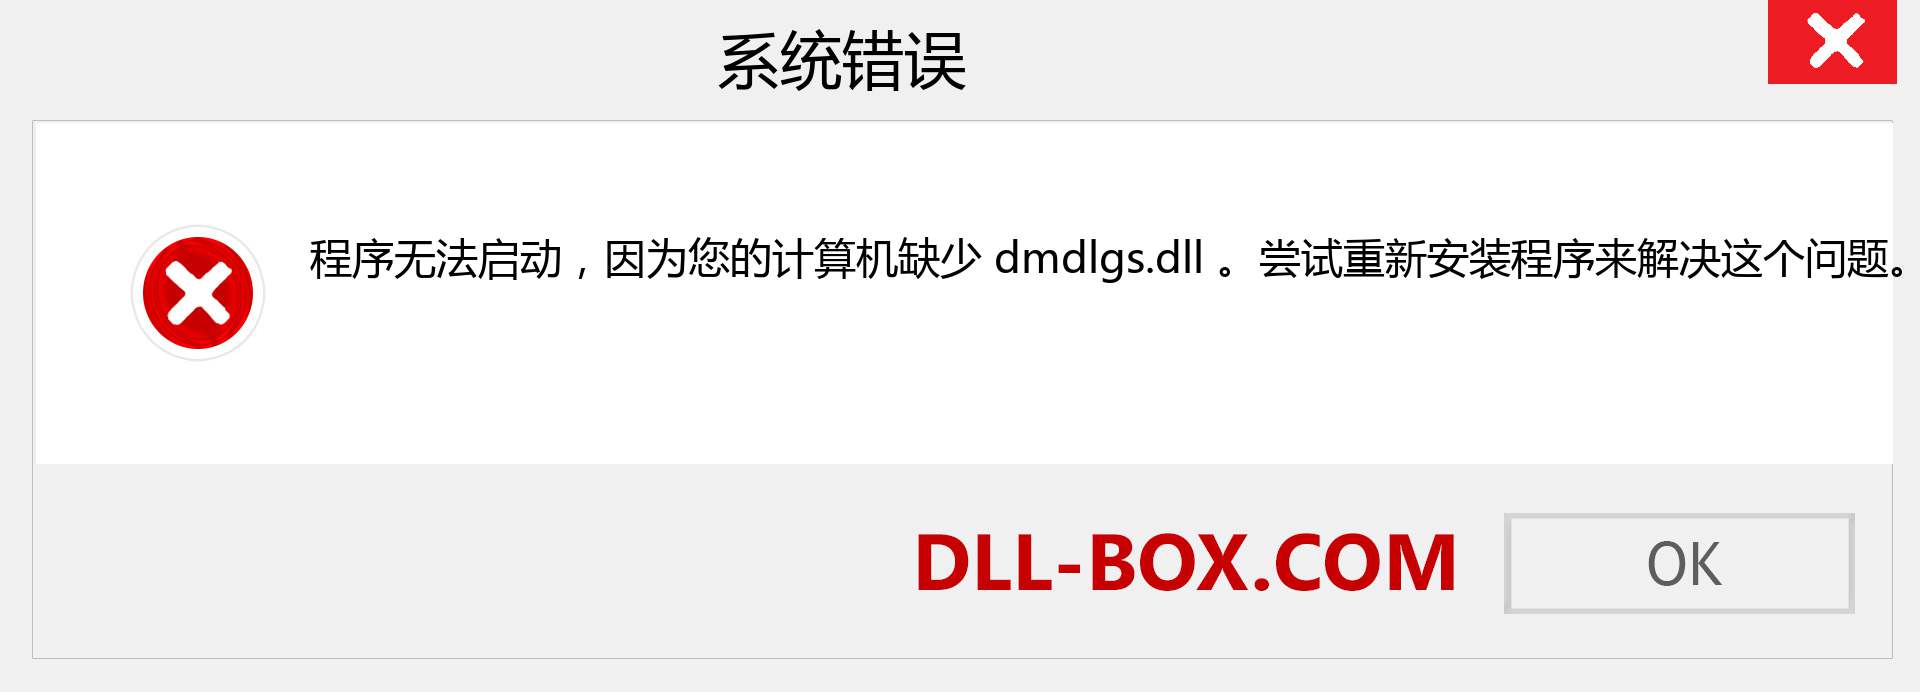 dmdlgs.dll 文件丢失？。 适用于 Windows 7、8、10 的下载 - 修复 Windows、照片、图像上的 dmdlgs dll 丢失错误